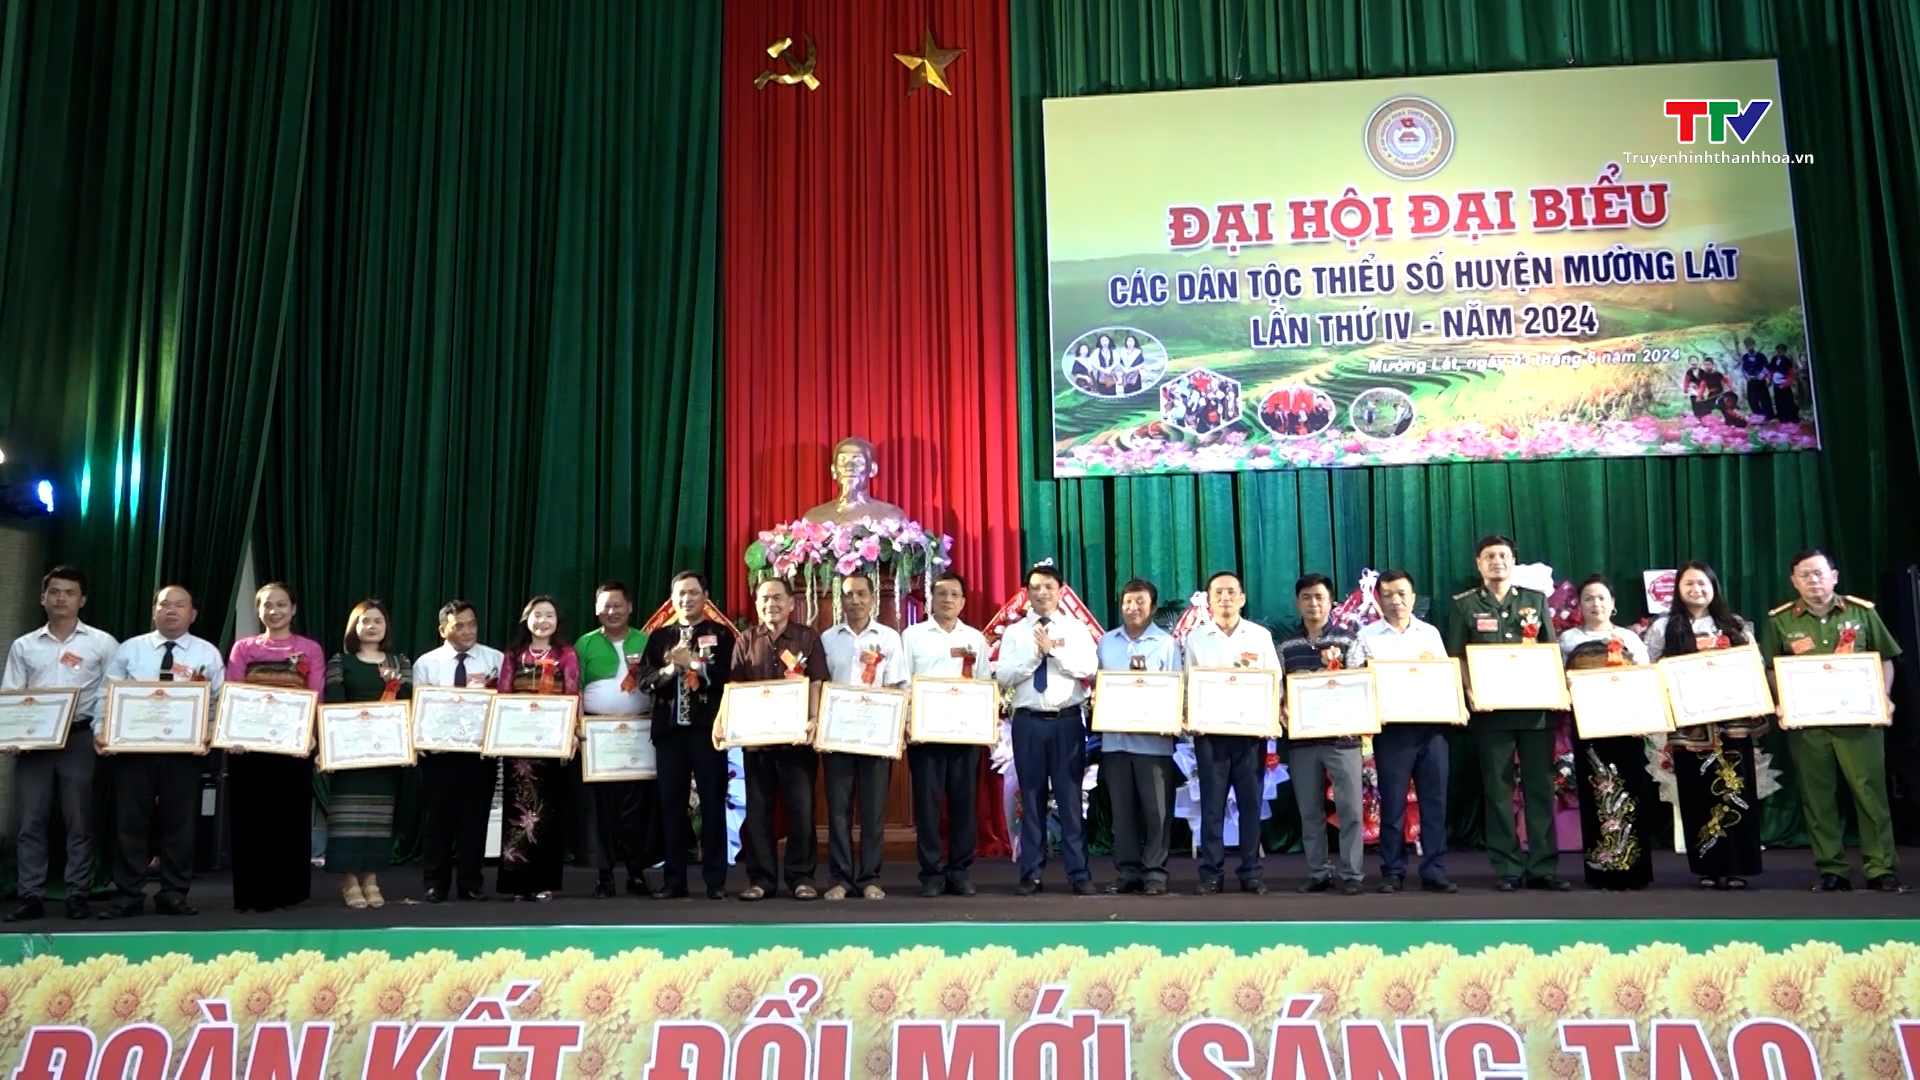 Huyện Mường Lát tổ chức thành công Đại hội đại biểu các dân tộc thiểu số lần thứ IV, năm 2024- Ảnh 2.